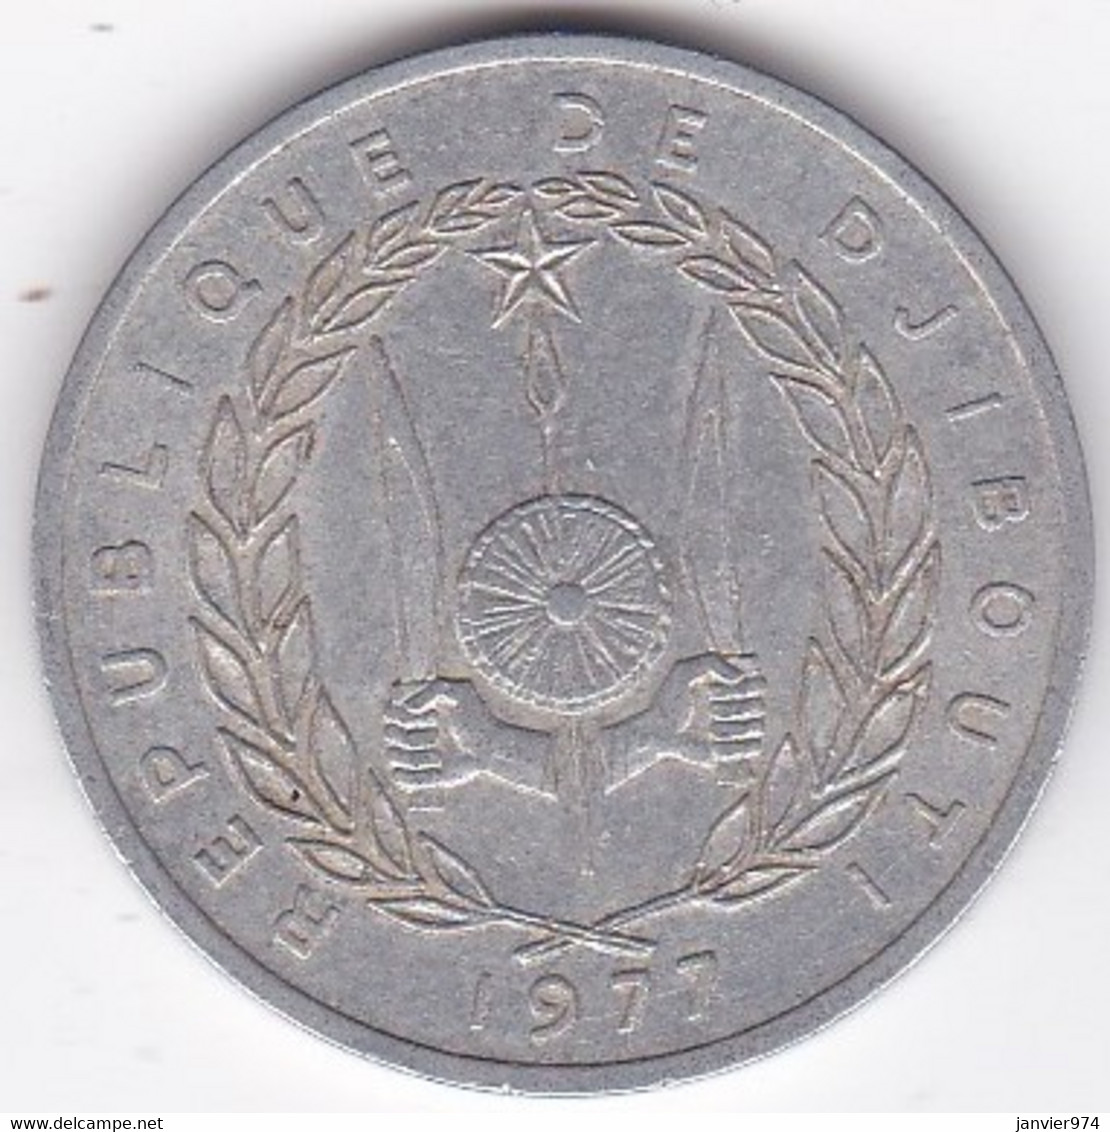 République De Djibouti 5 Francs 1977, En Aluminium , KM# 22 - Djibouti